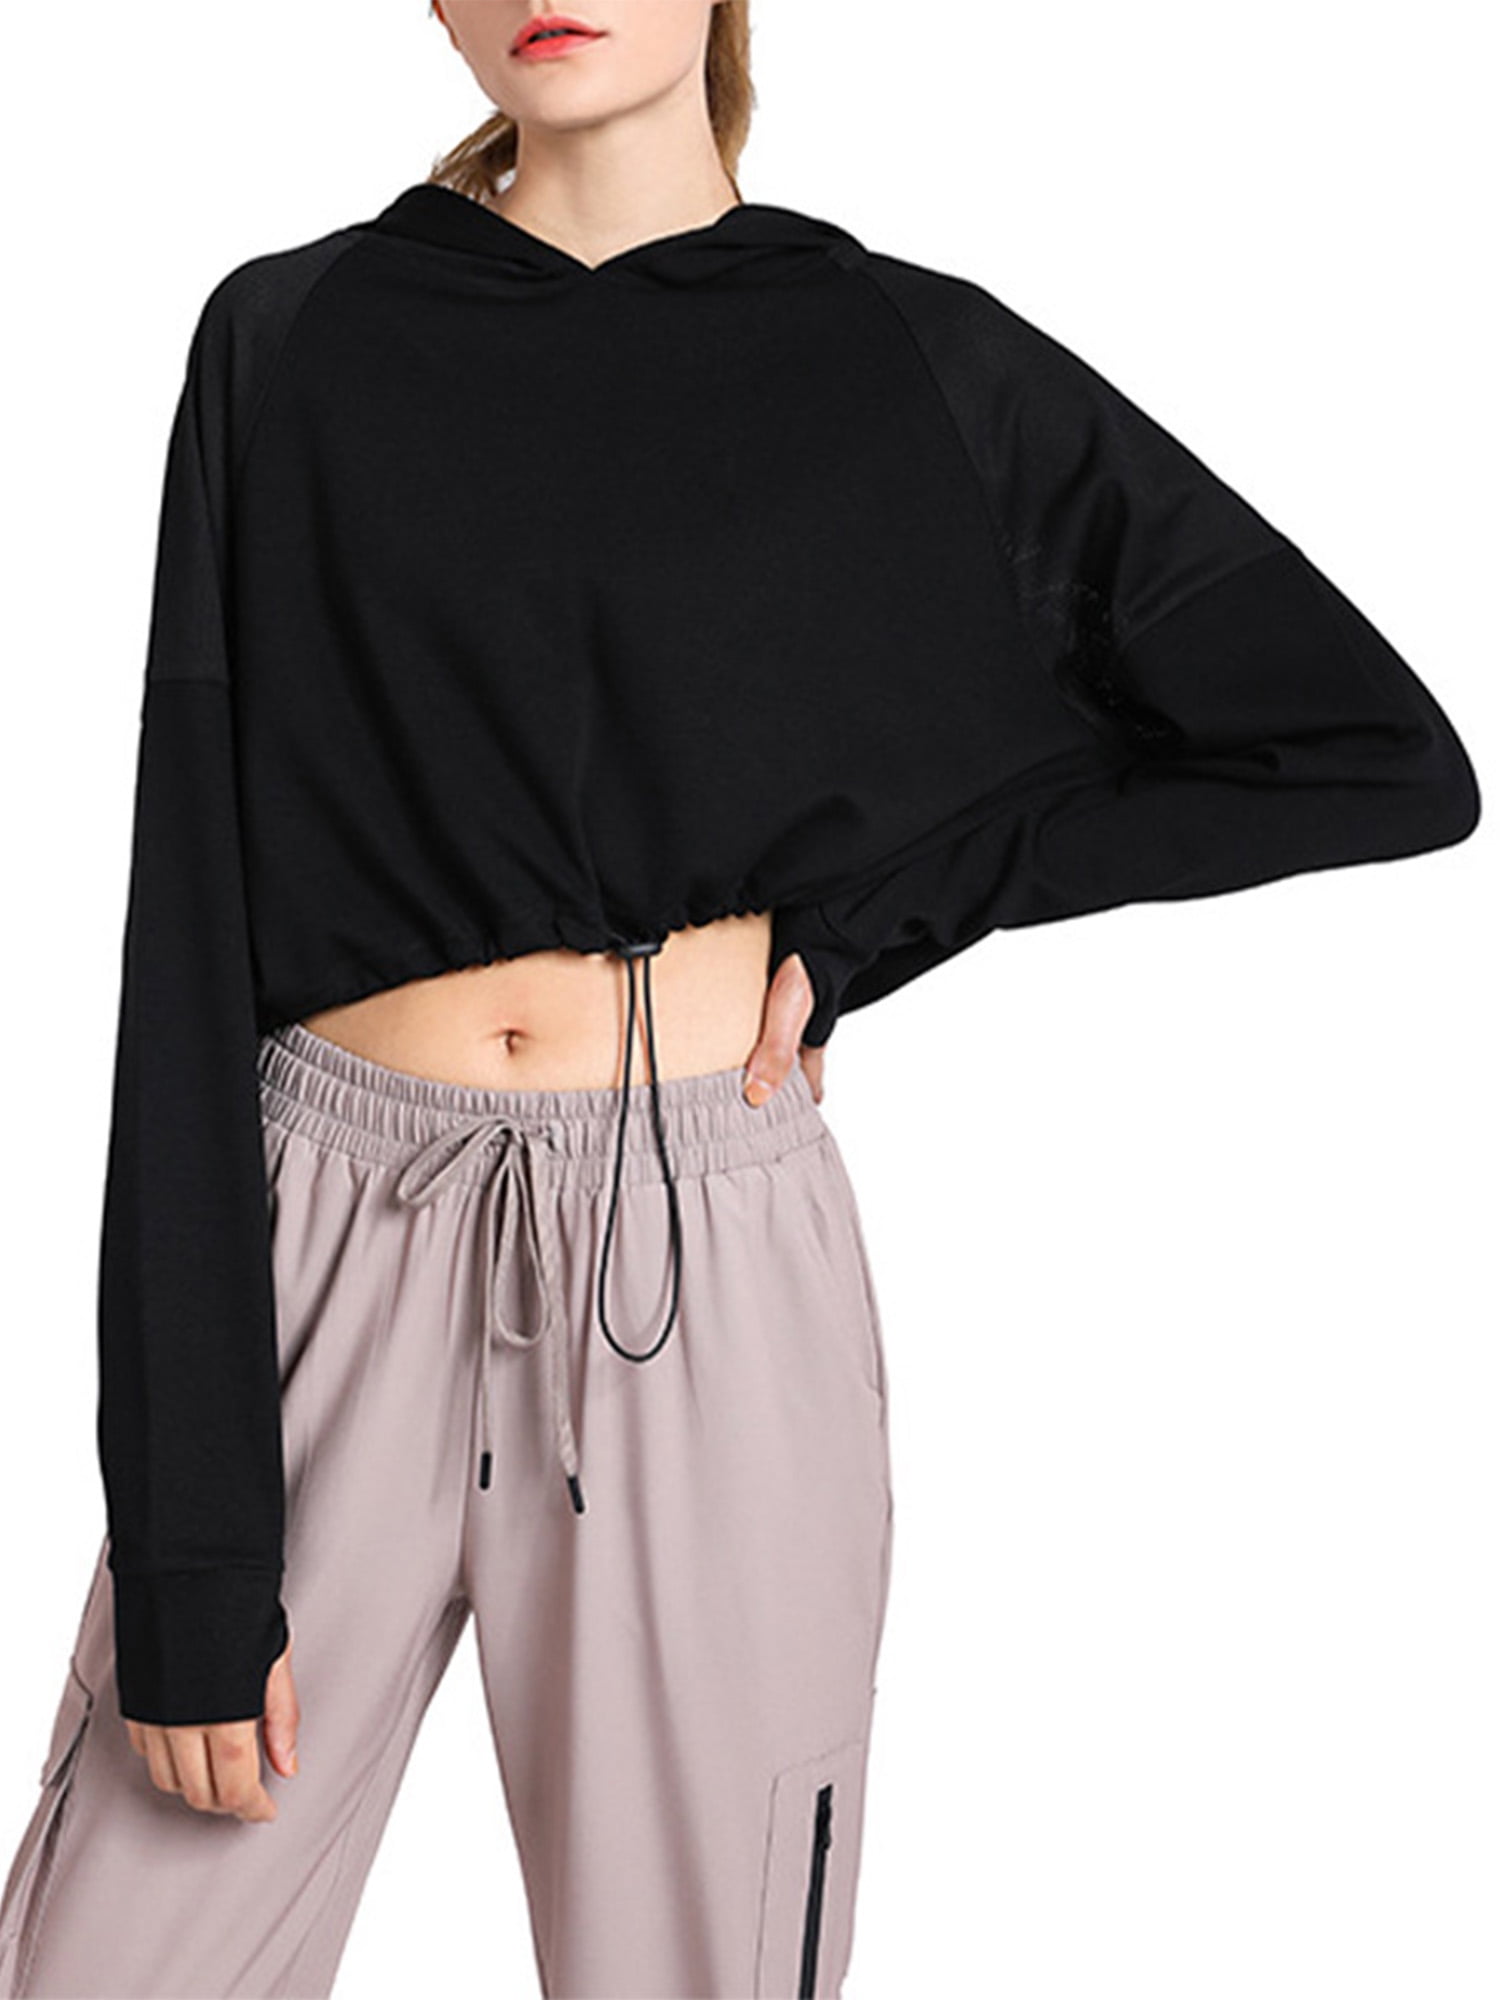 INTERESTPRINT Womens Long Sleeve Crop Top Pullover Sweatshirt XS~2XL